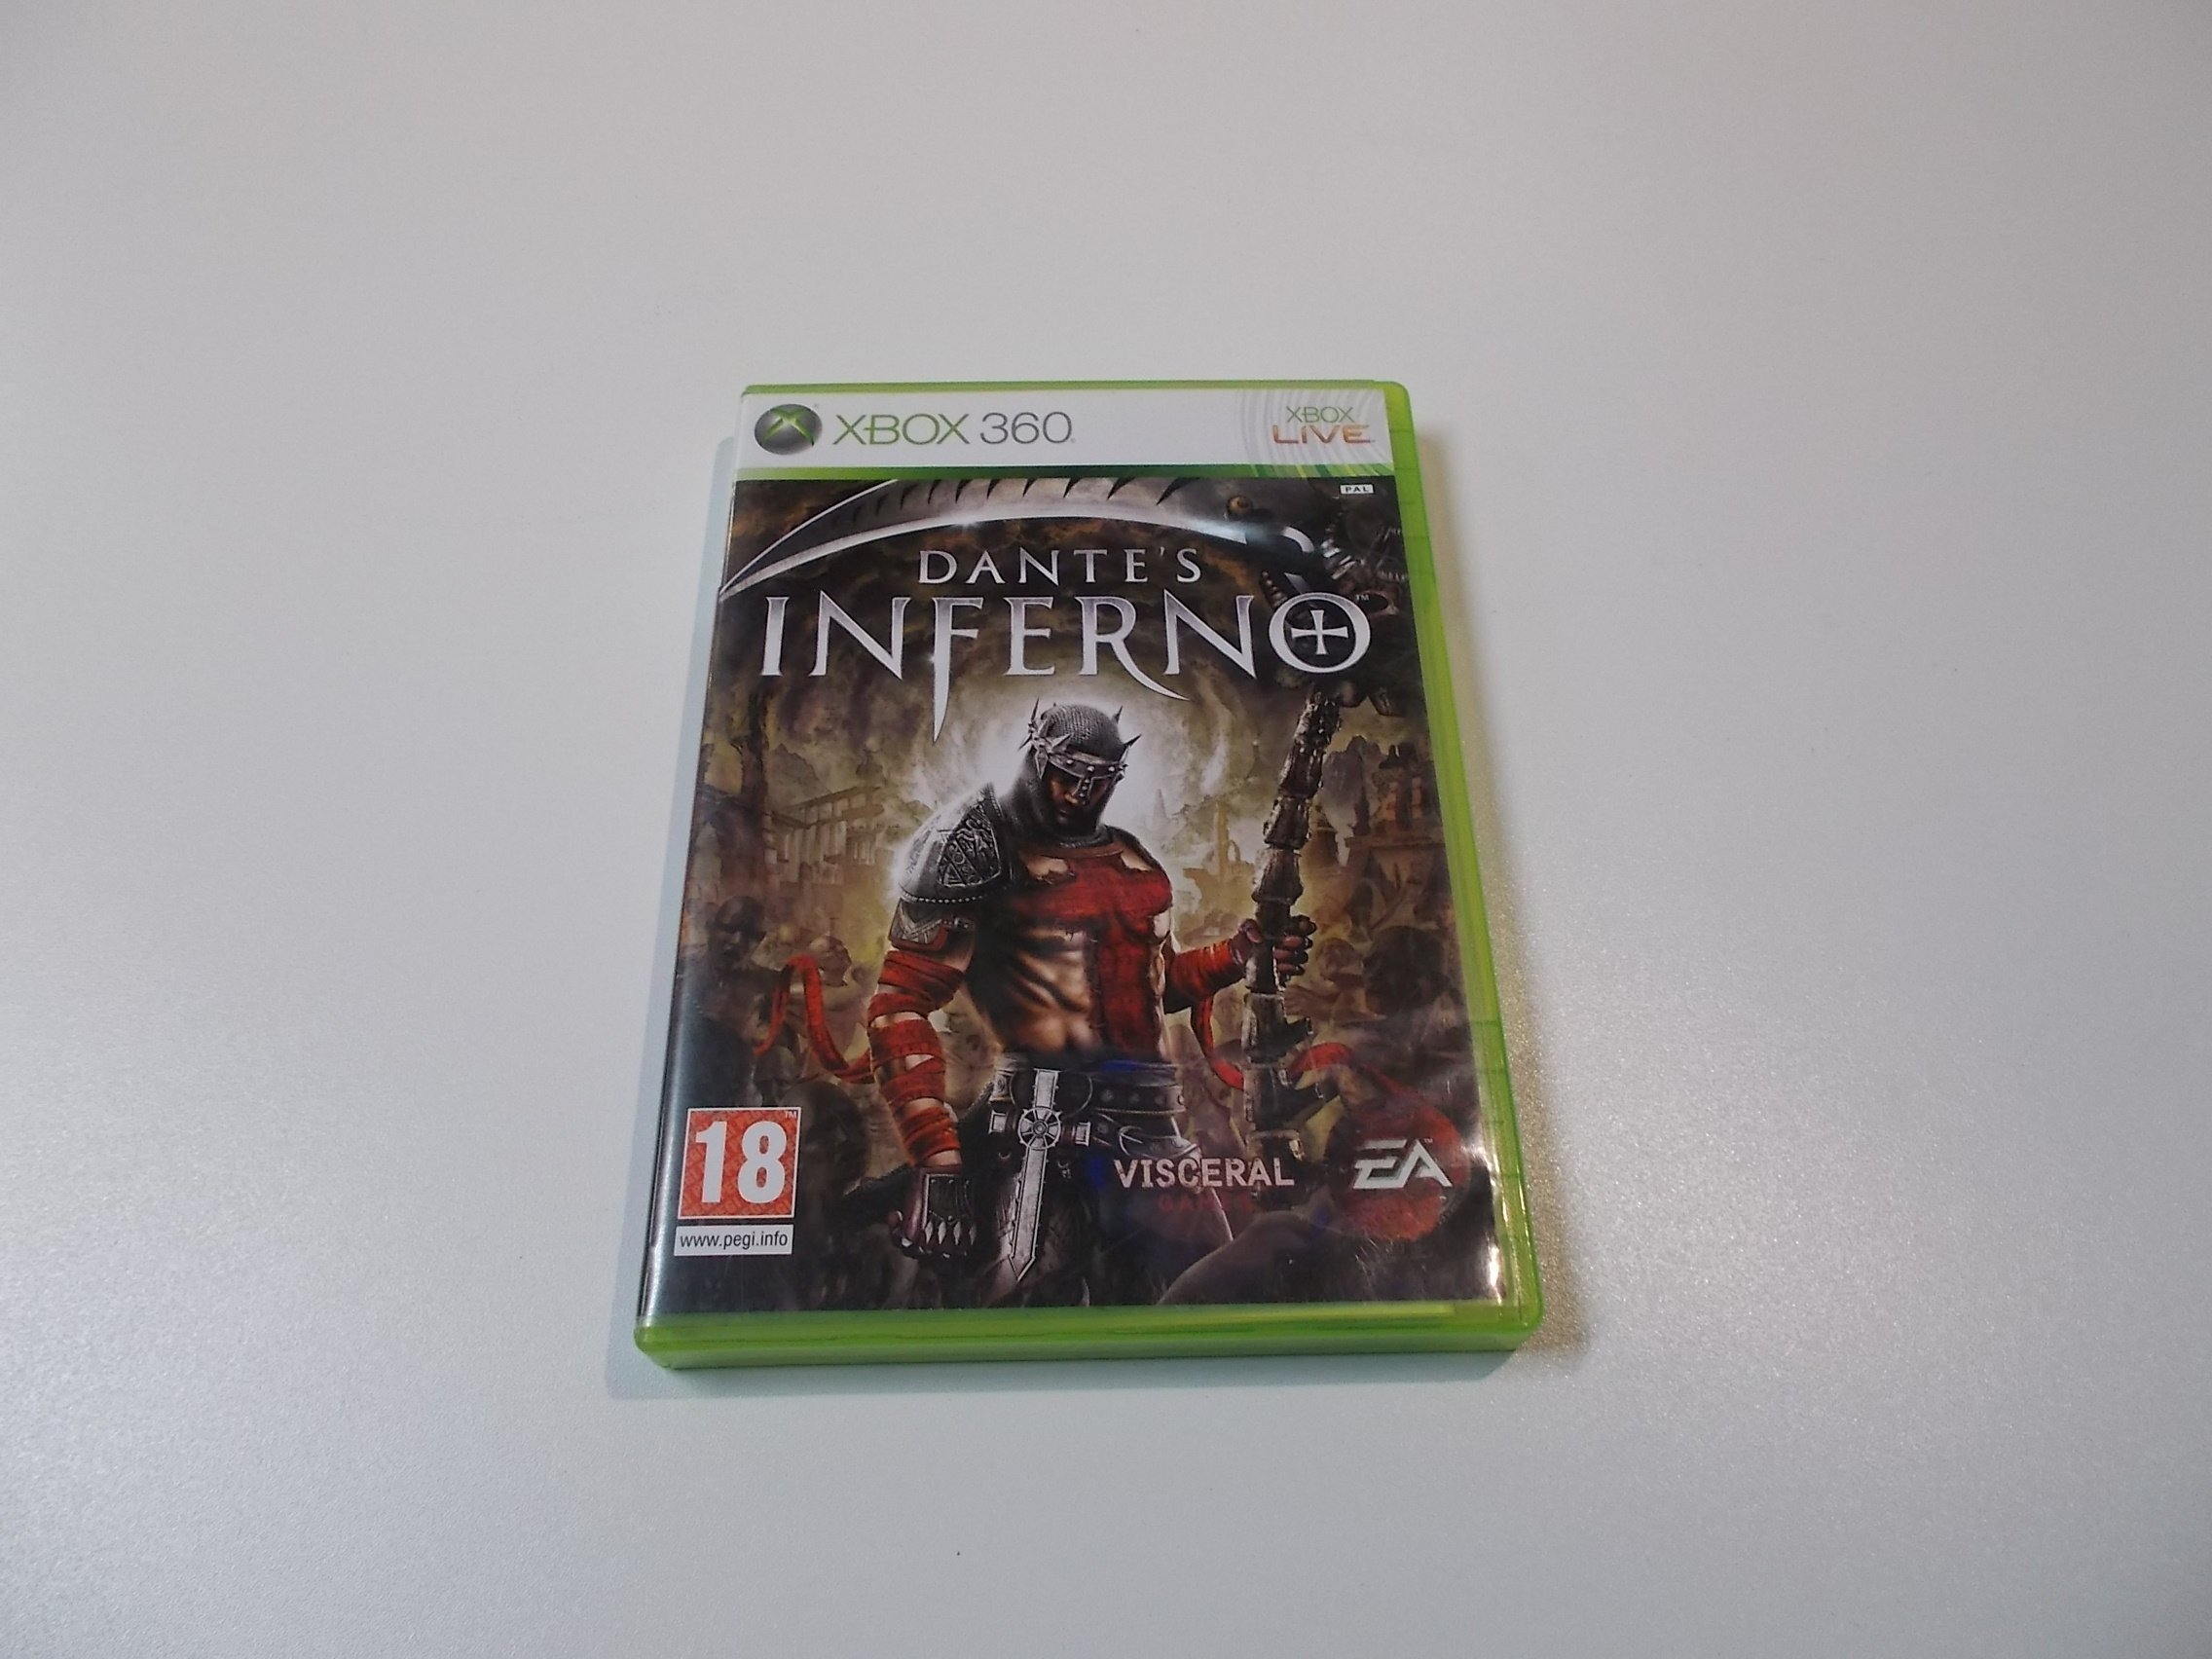 Dante's Inferno - GRA Xbox 360 - Sklep 